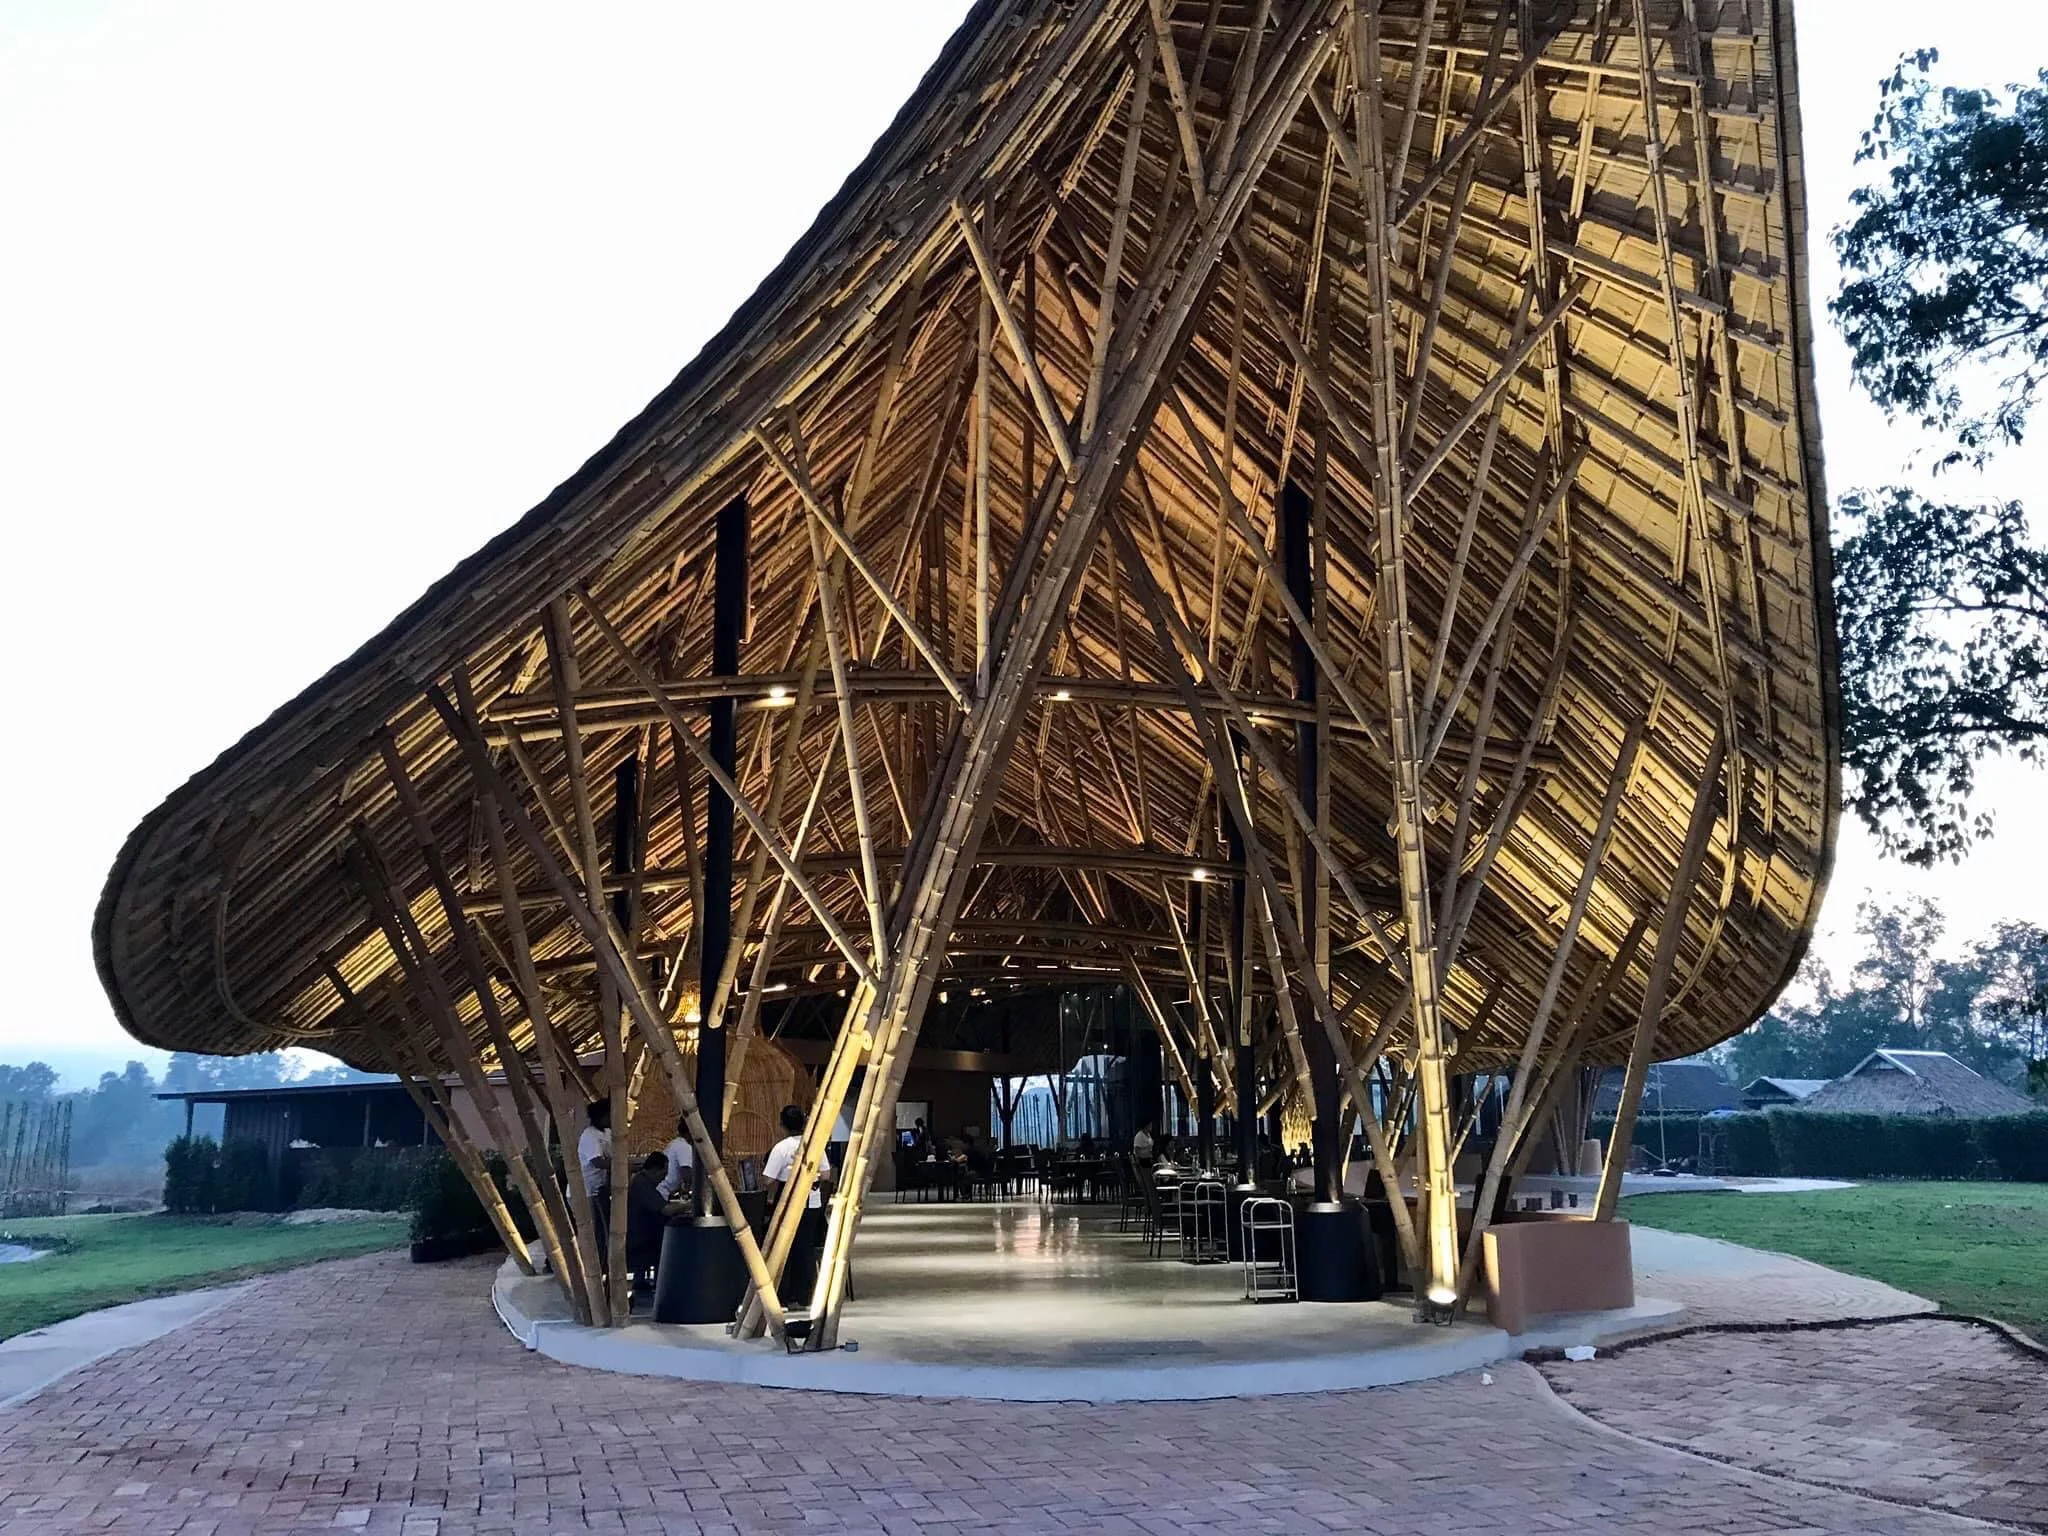 อาคารไม้ไผ่ร้าน Bamboo ใหญ่สุวินทวงศ์